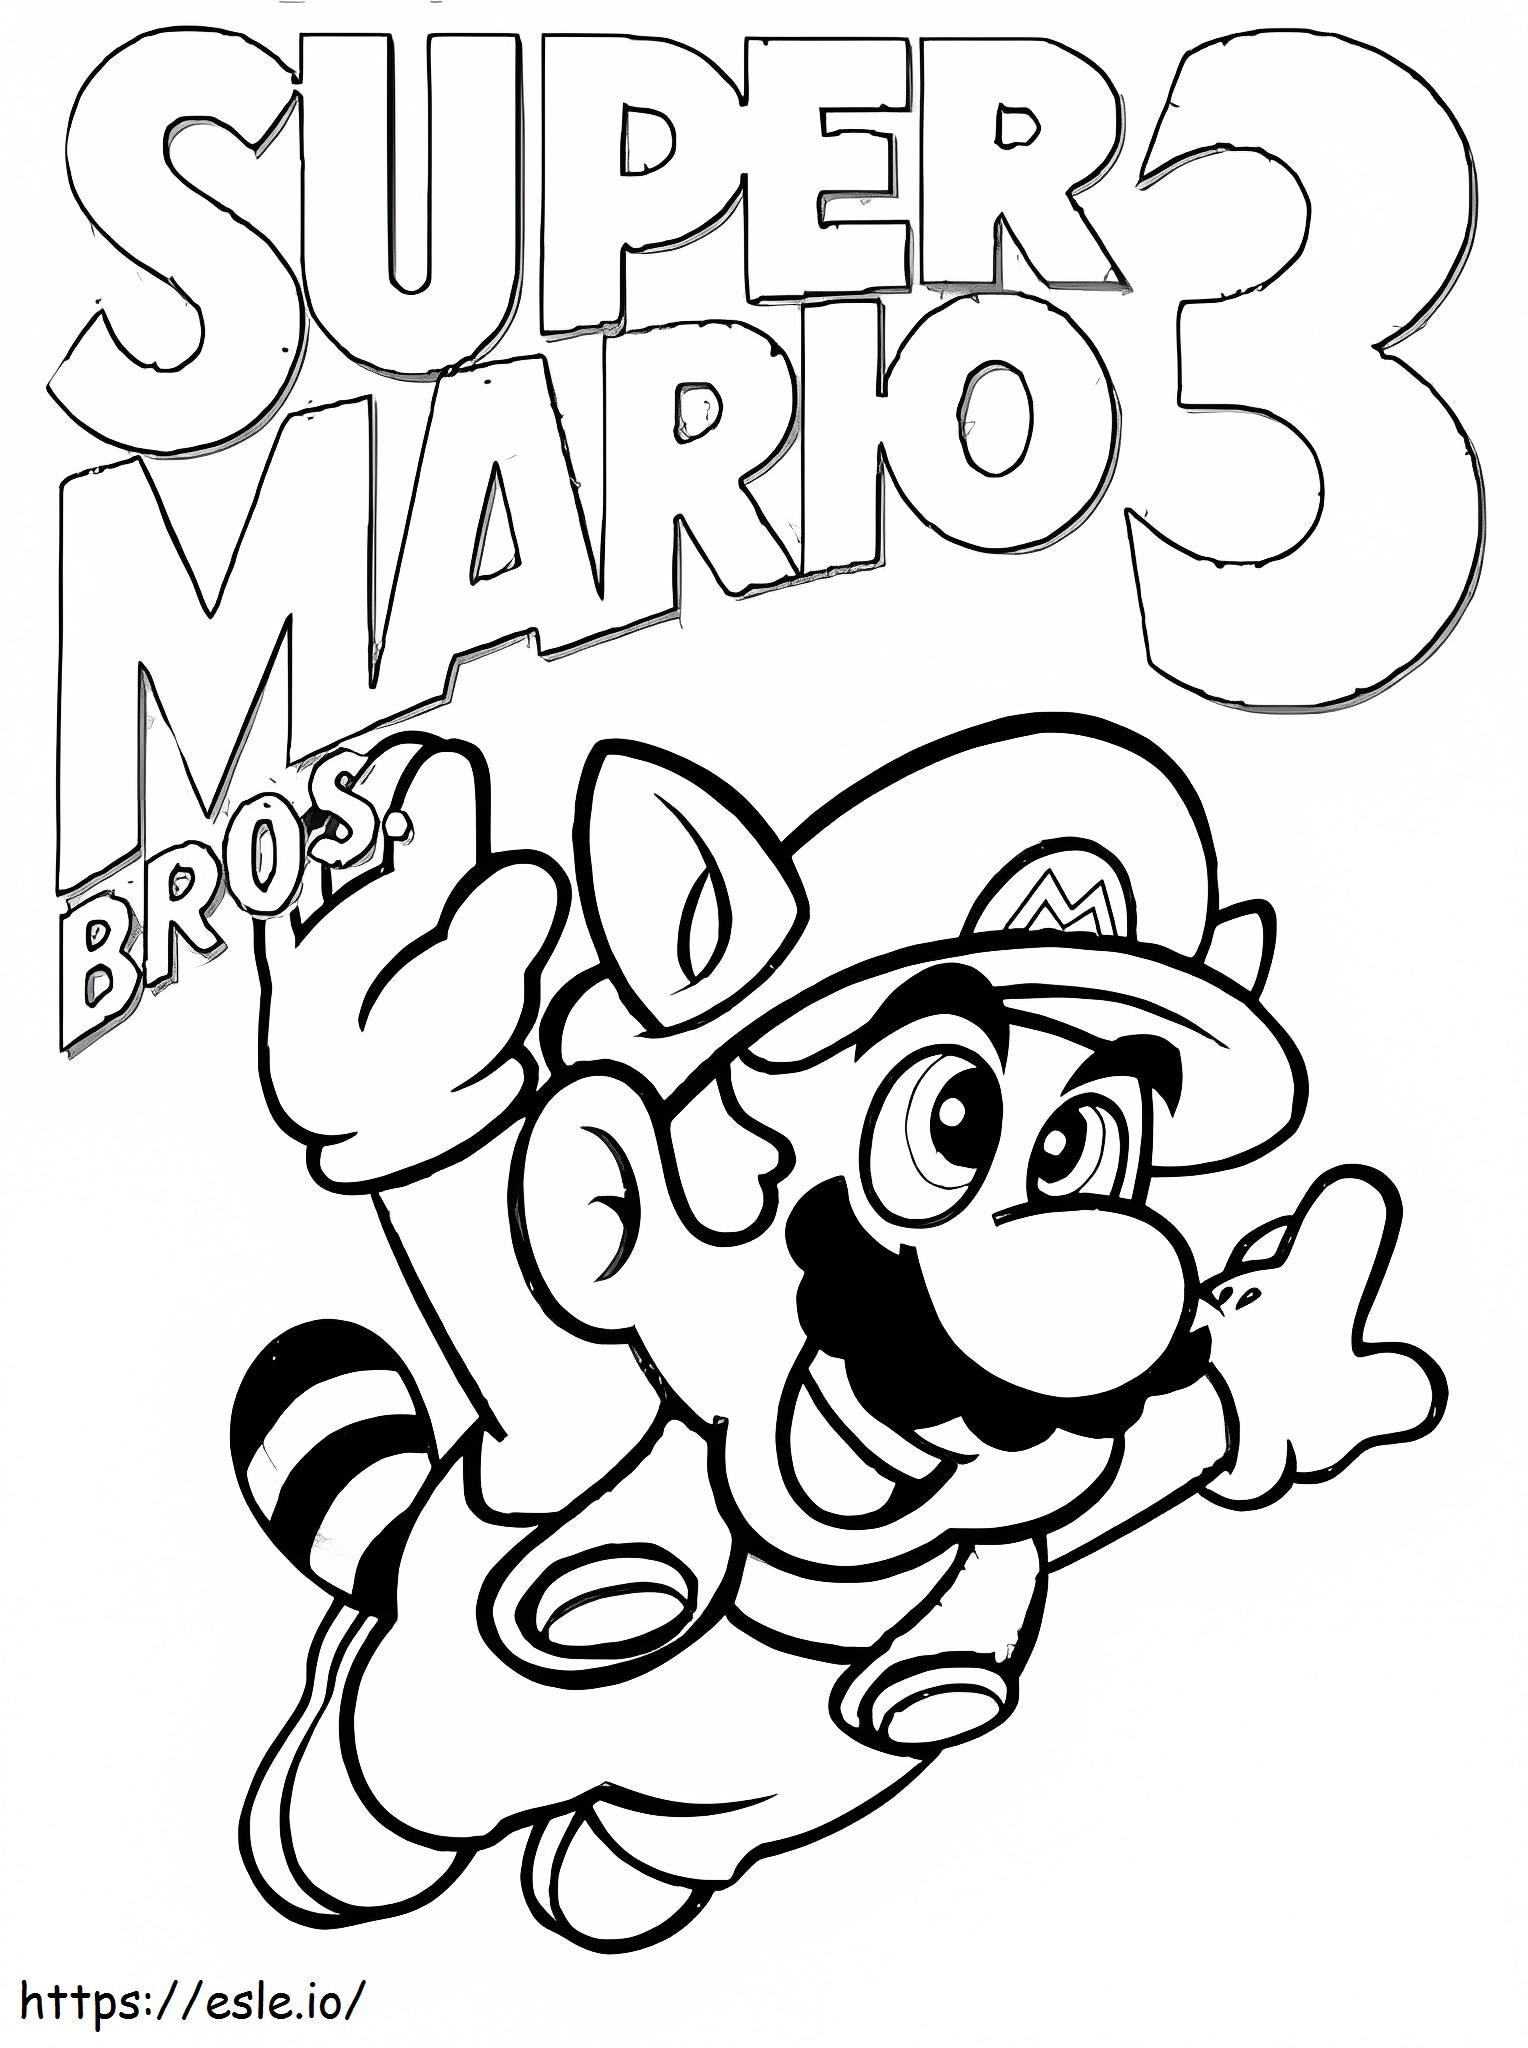 Supser Mario 3 de colorat